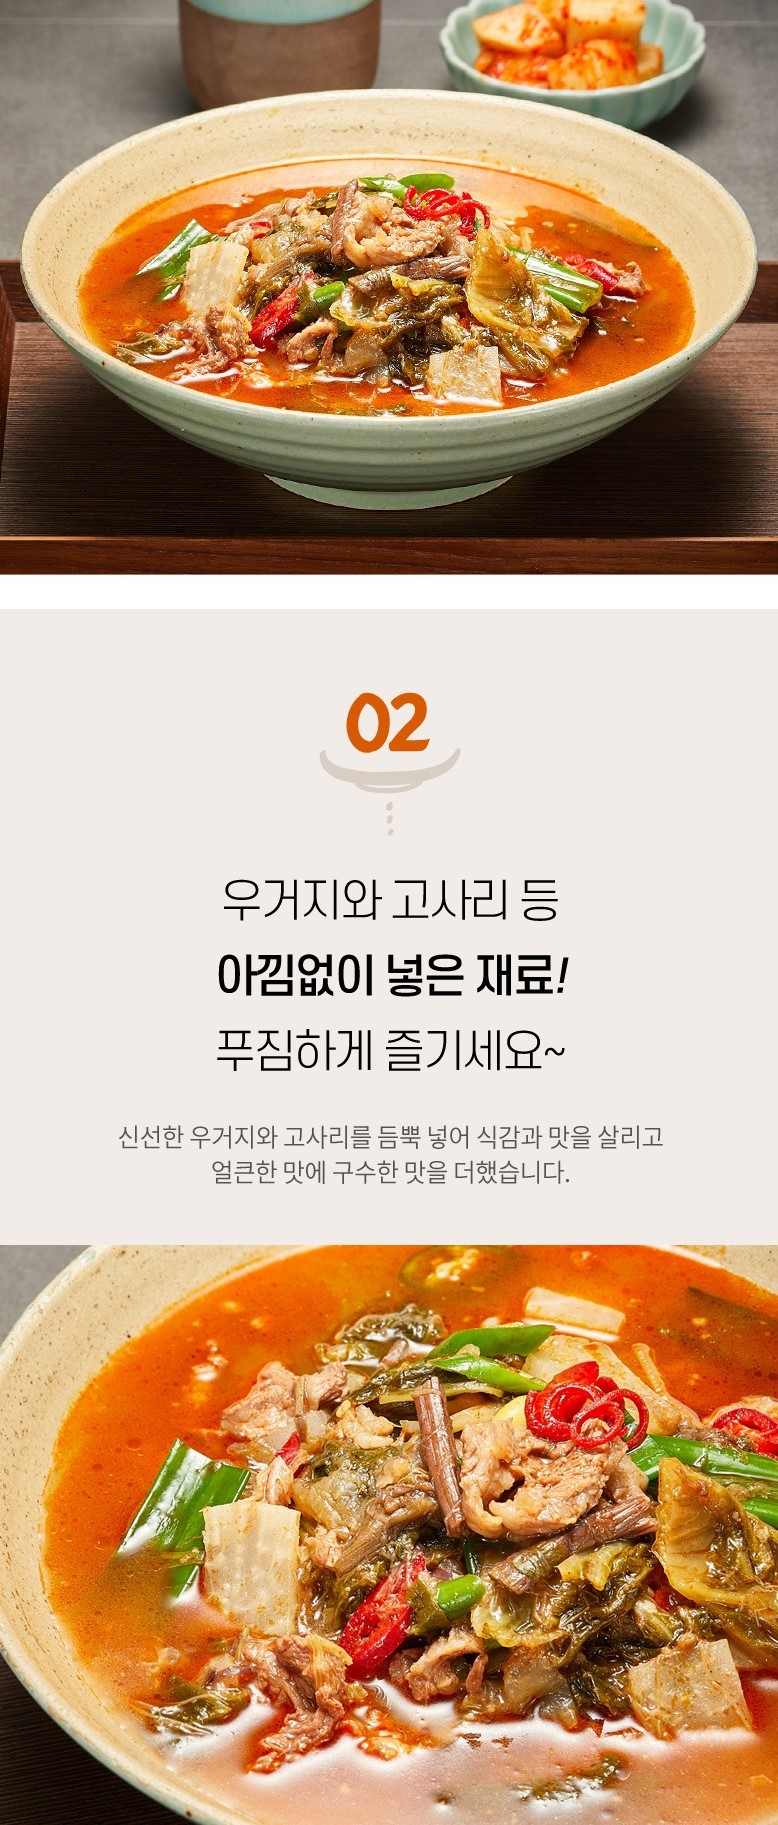 韓國食品-[국제] 한우사골 우거지탕 1kg